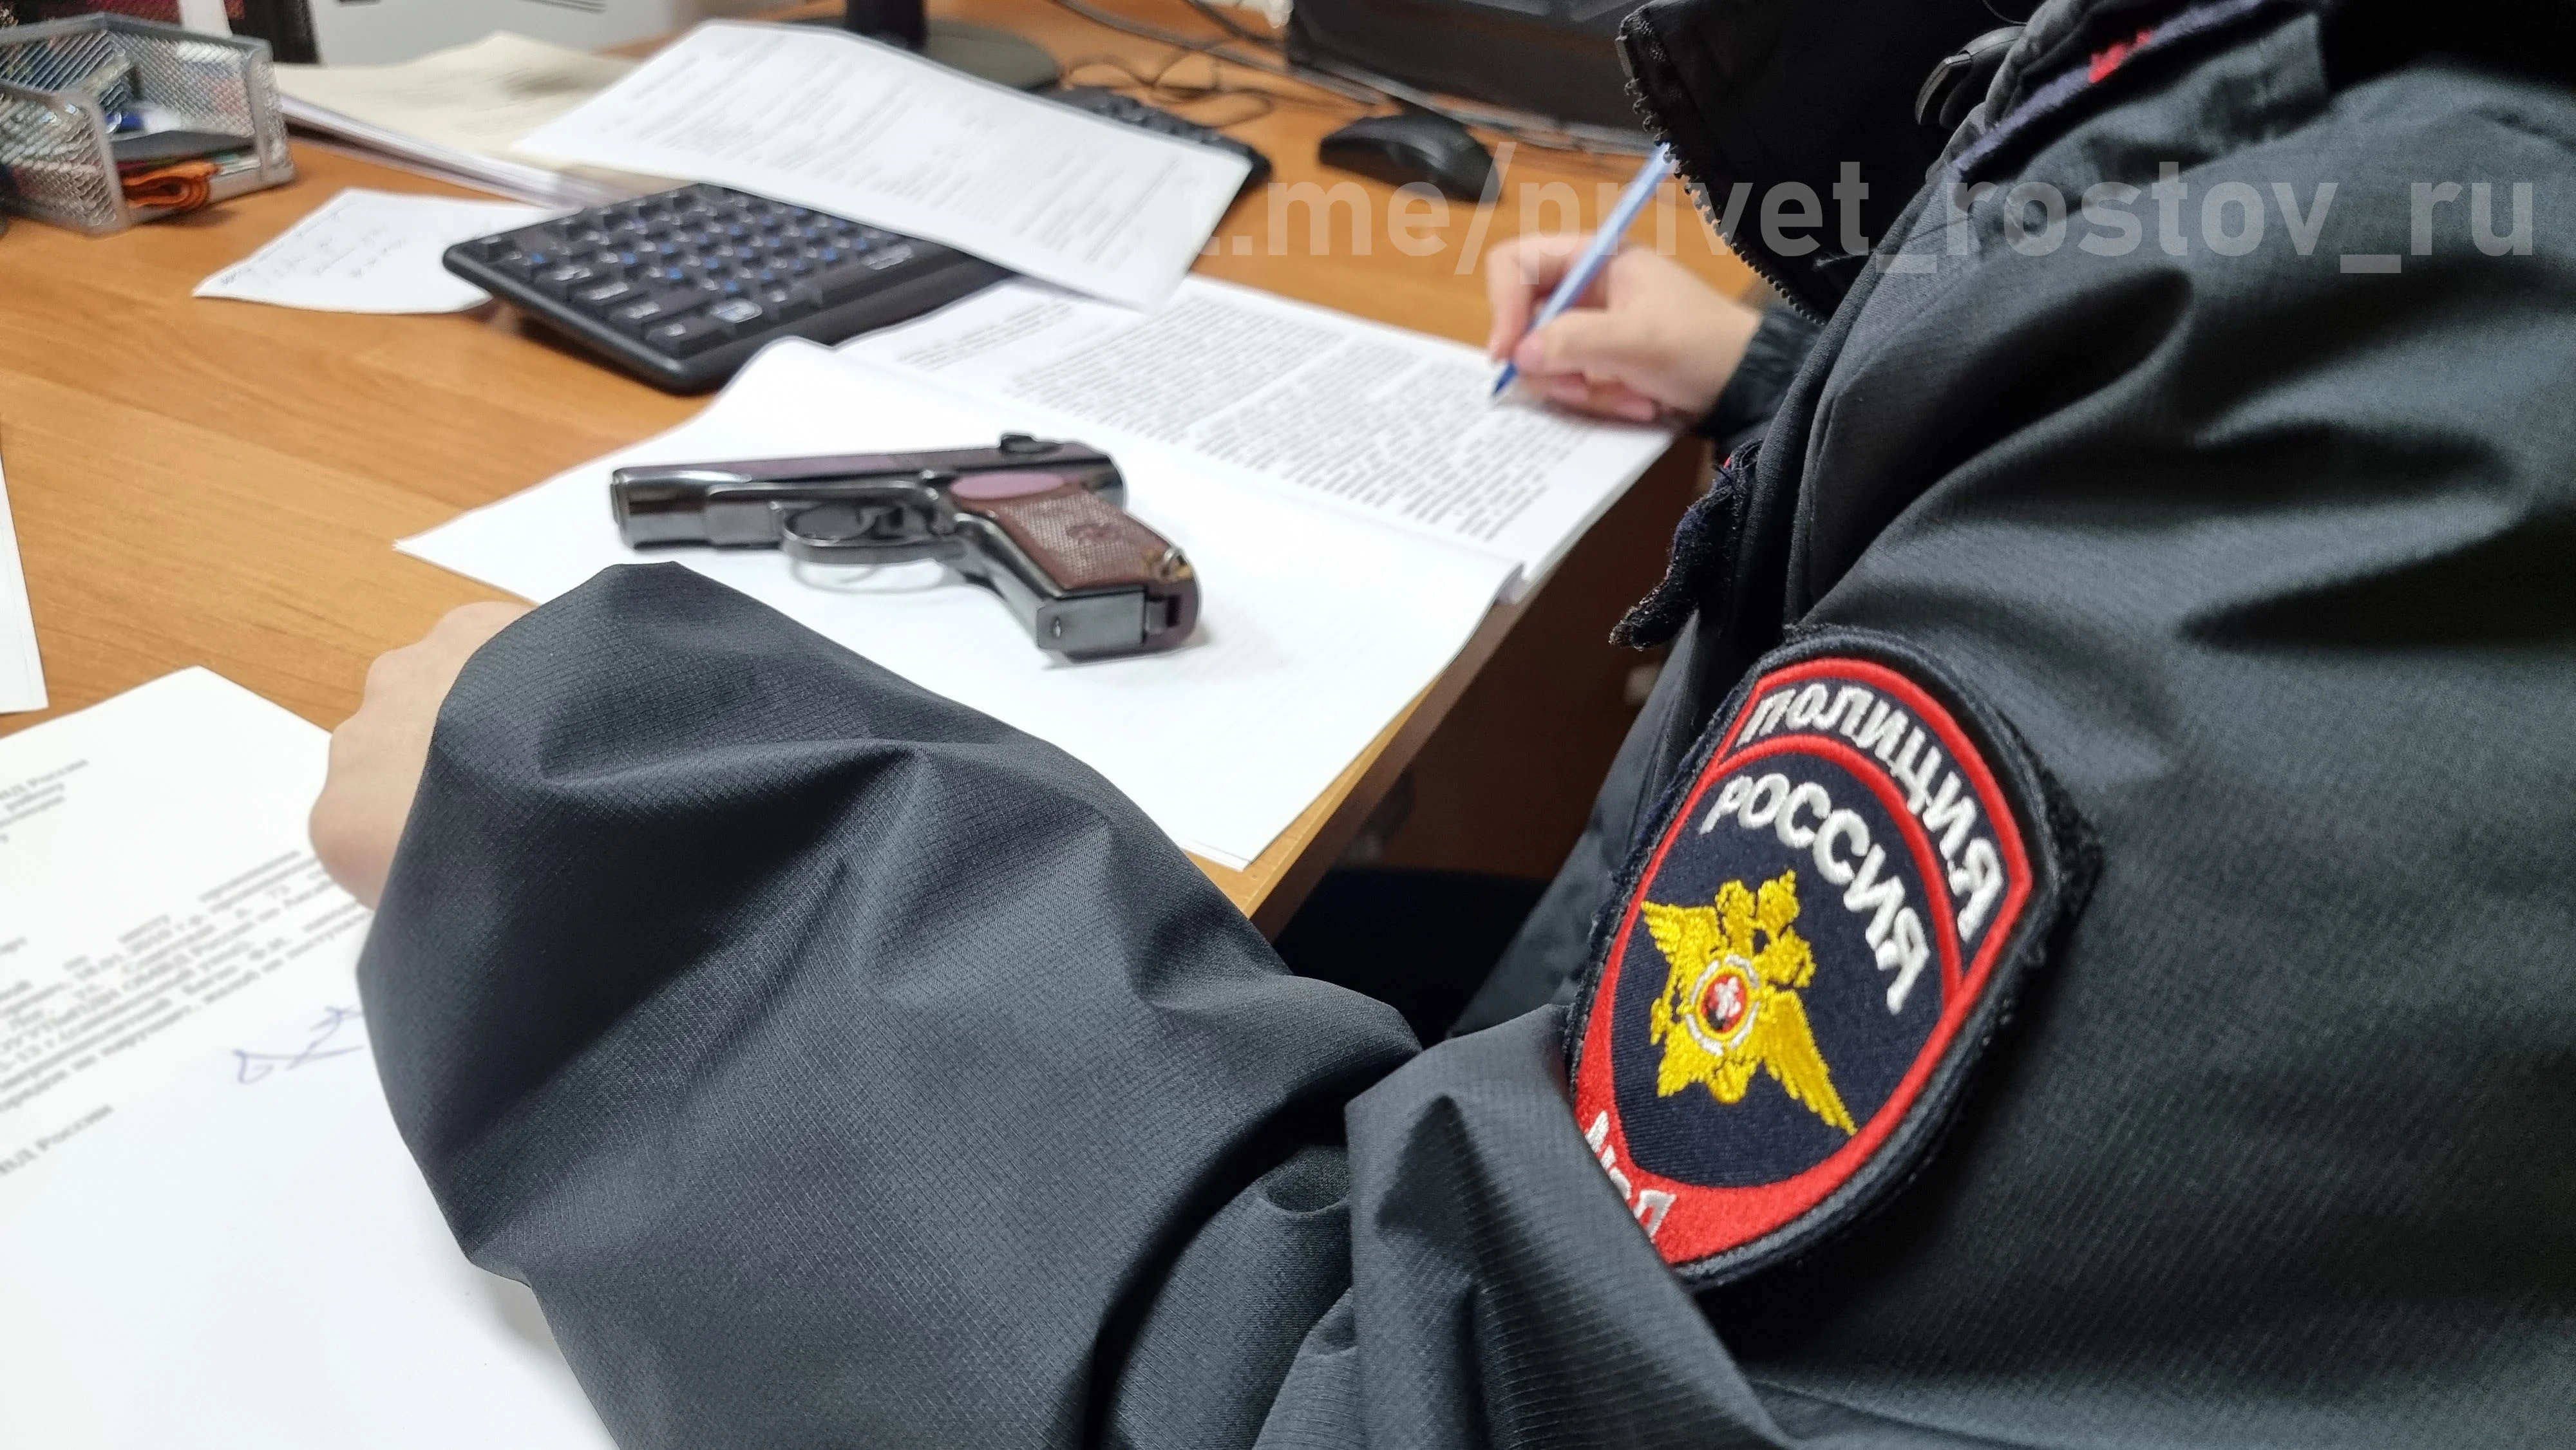 Больше 250 единиц оружия изъяли инспекторы Росгвардии у жителей в Ростовской области